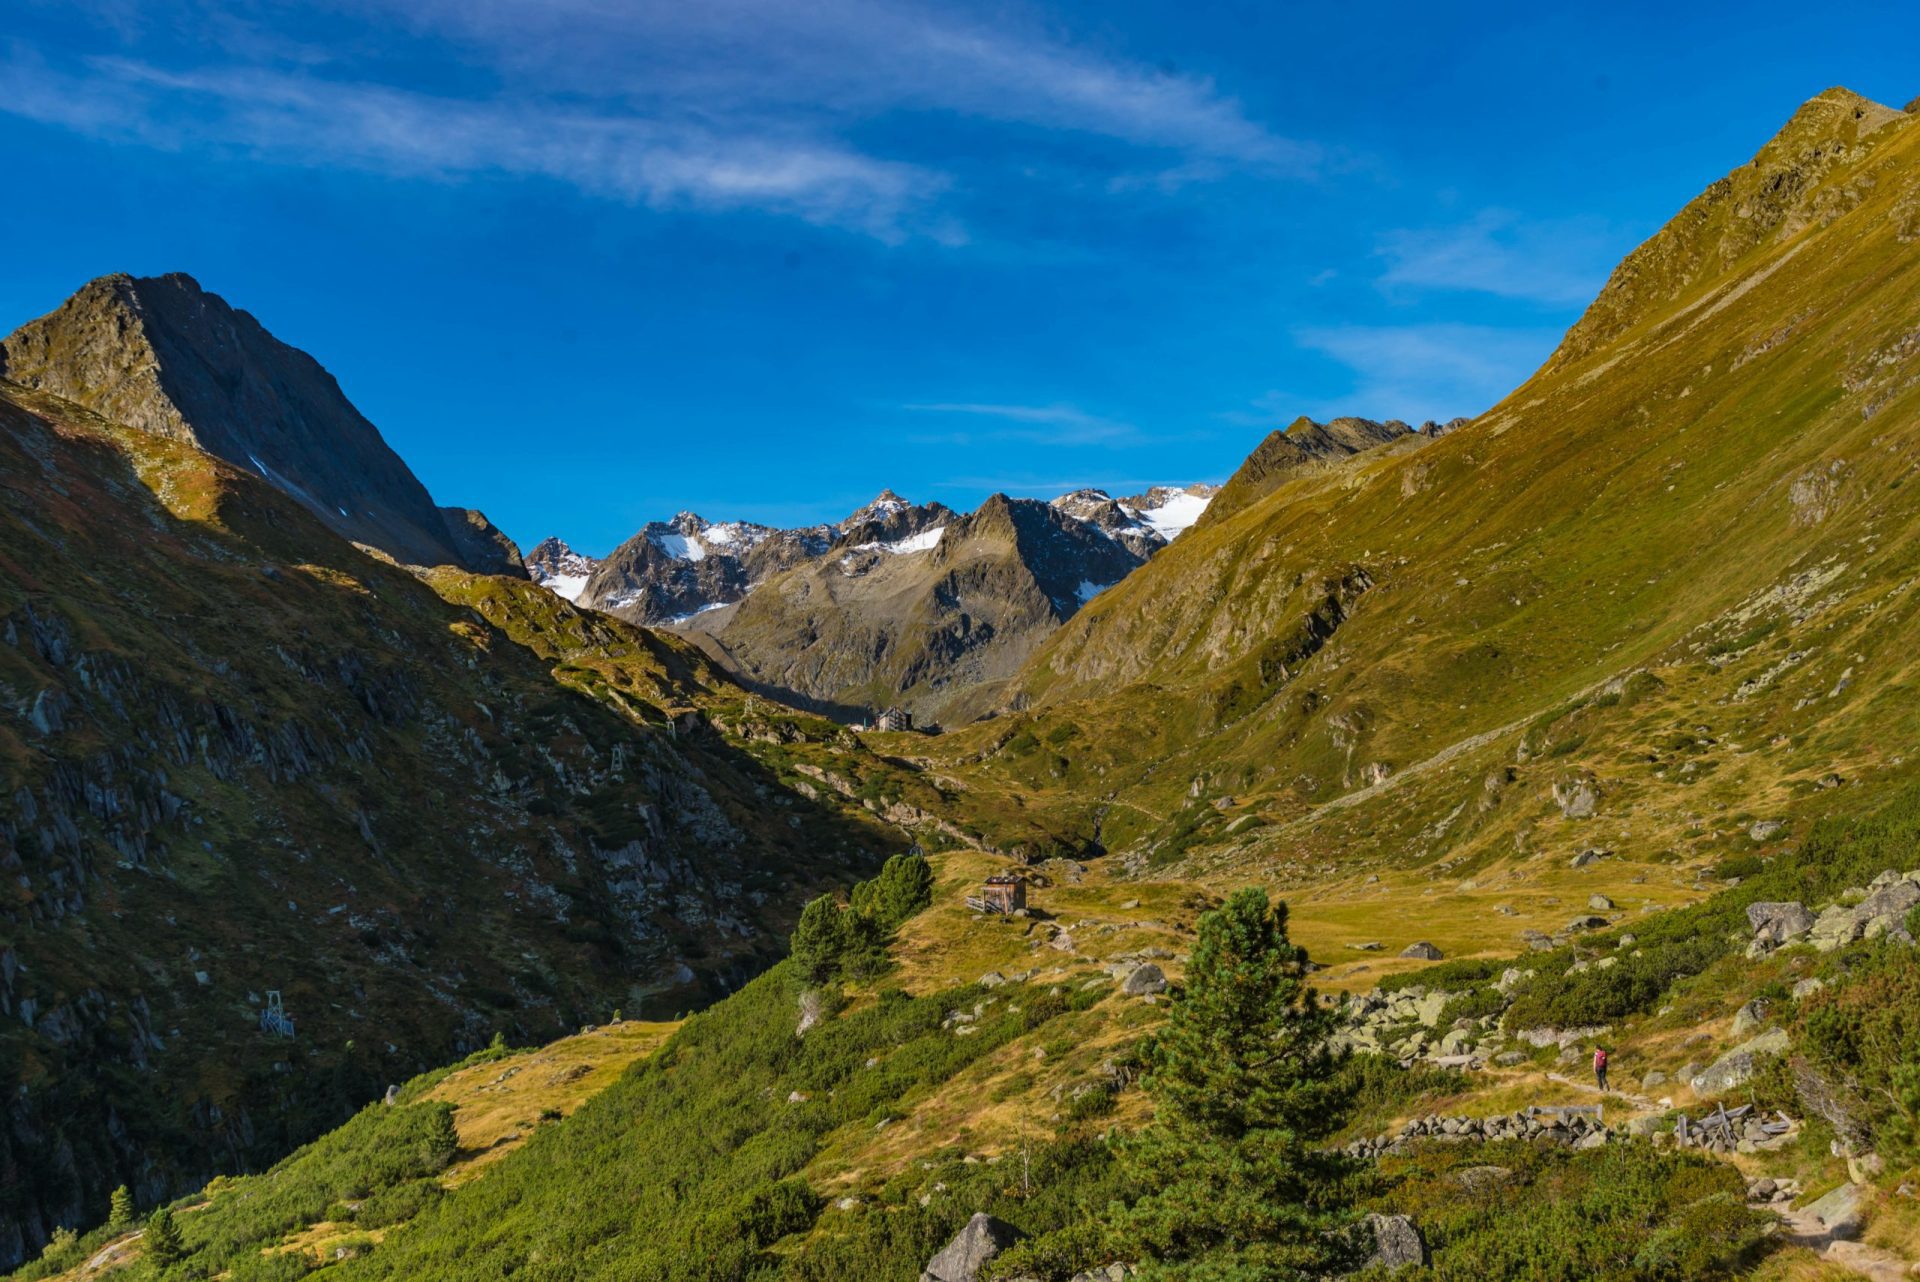 paysage de montagne dans la vallée de stubai tyrol, oberbergtal avec franz senn hütte